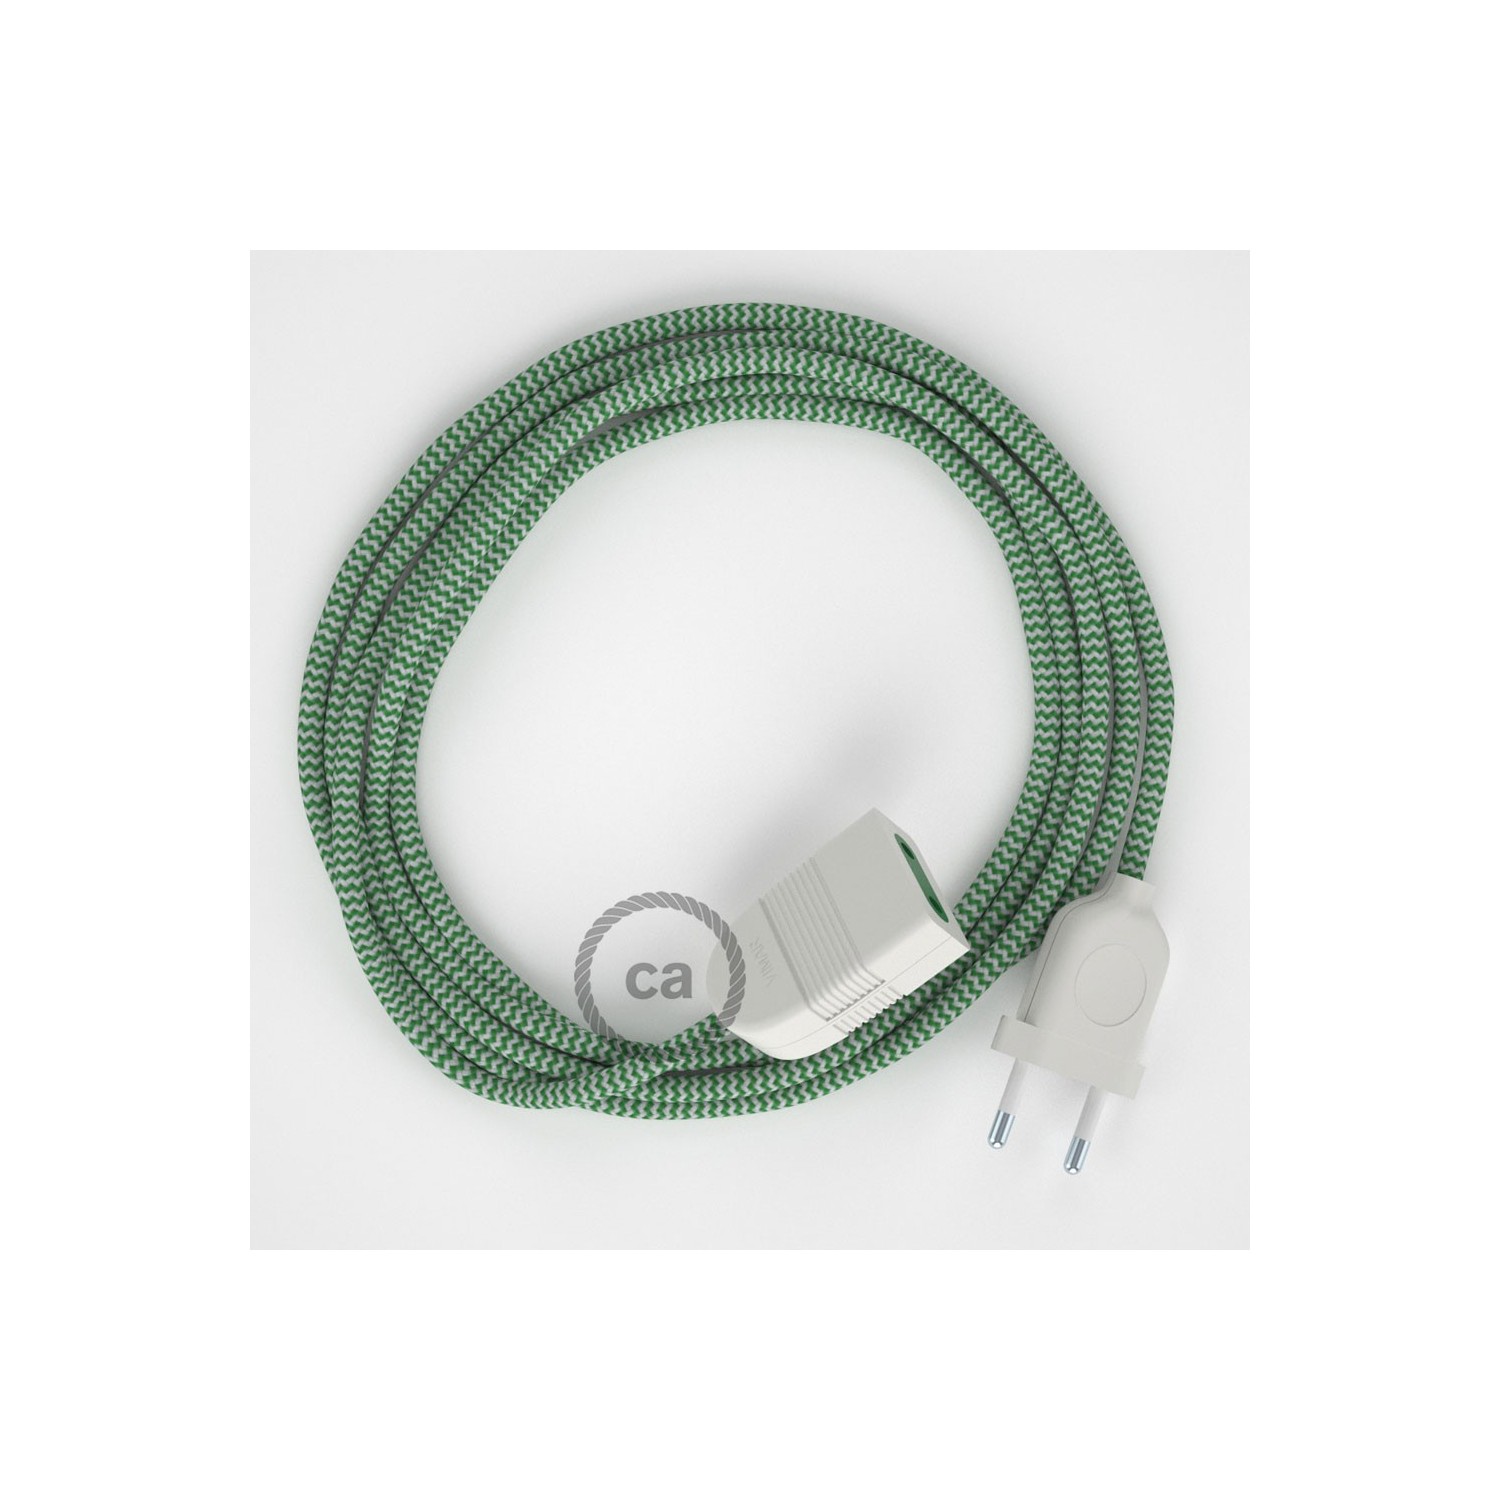 Produžni kabel za napajanje (2P 10A) Cik-Cak Zeleni Rajon RZ06 - Made in Italy